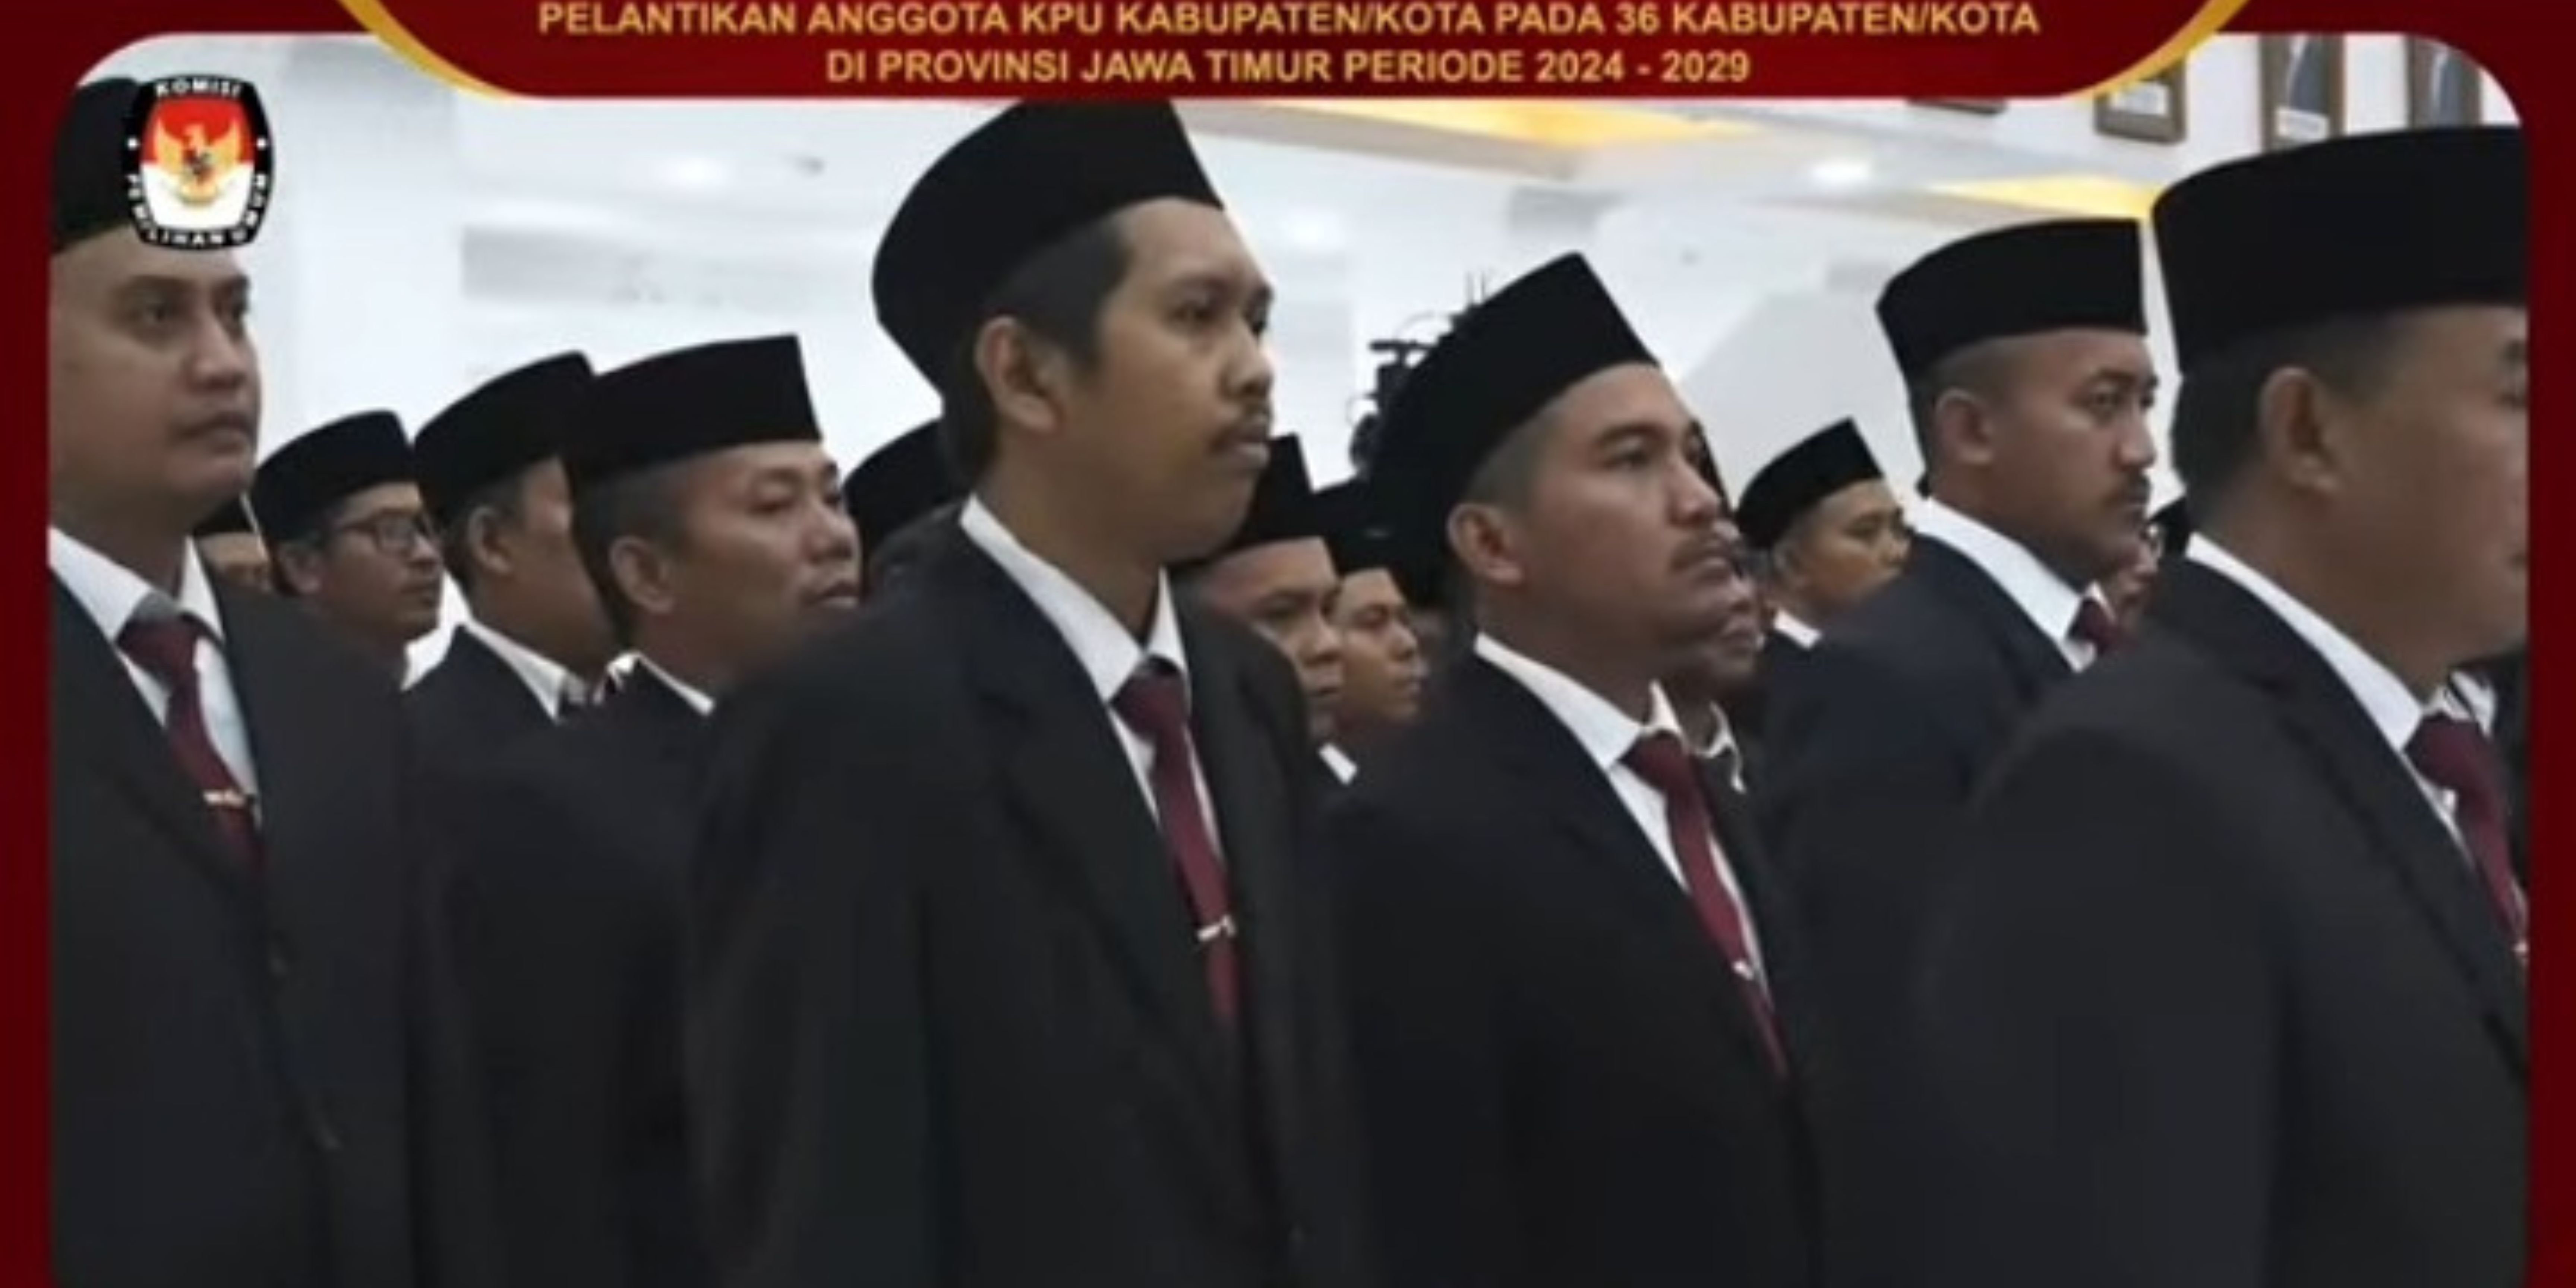 Anggota KPU kabupaten kota di Jawa Timur saat mengikuti pelantikan